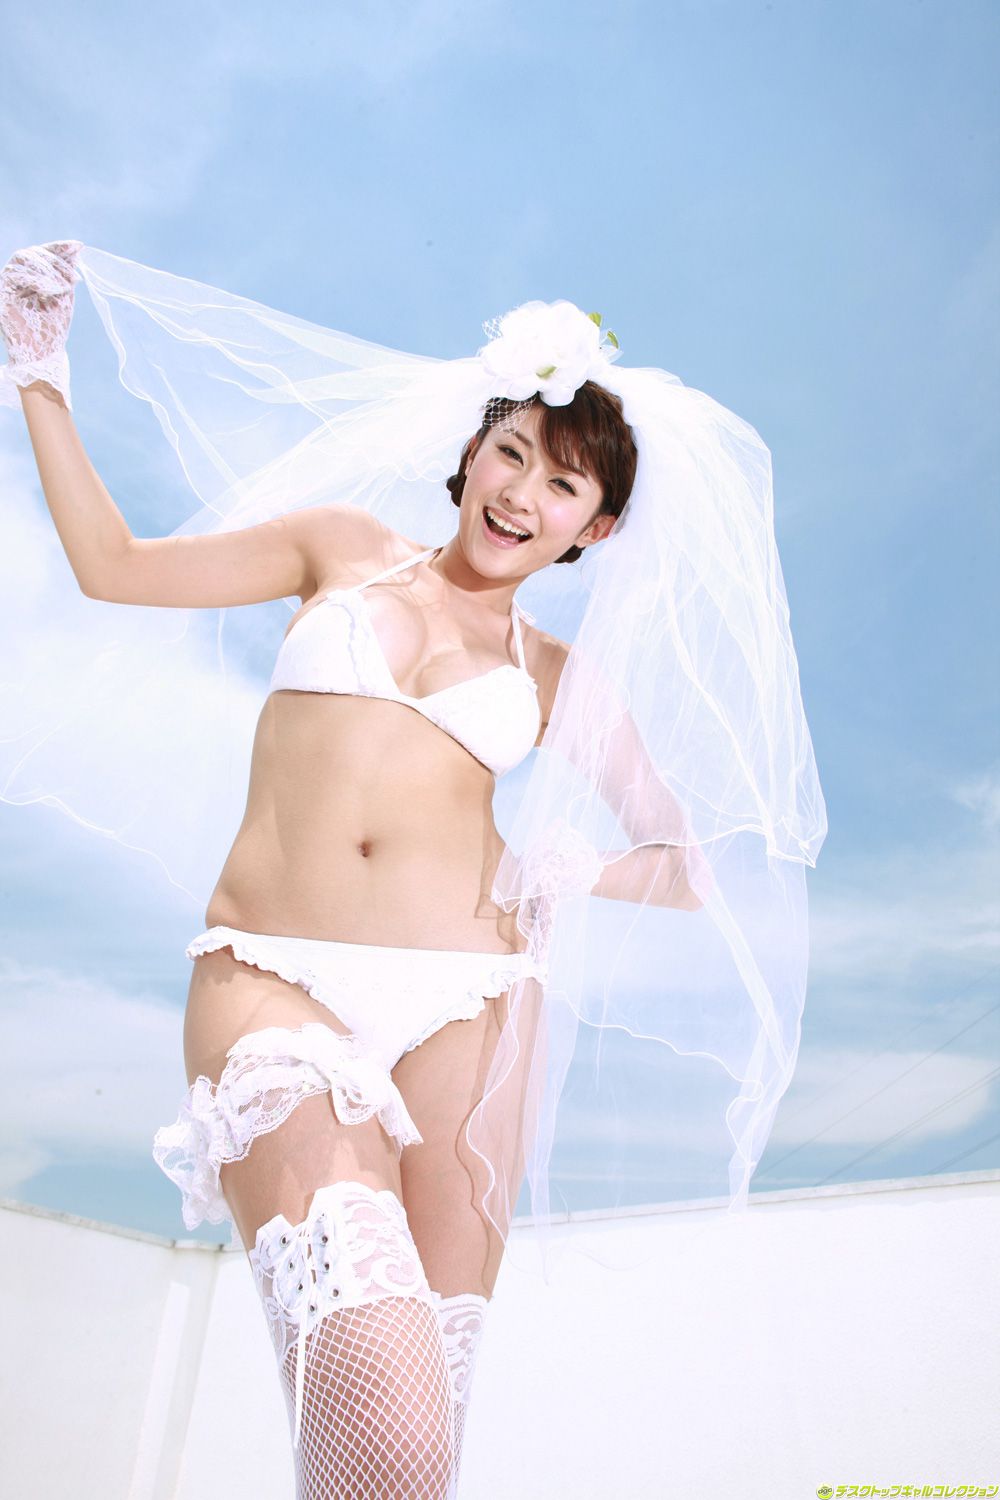 эротика япония невеста фото 80